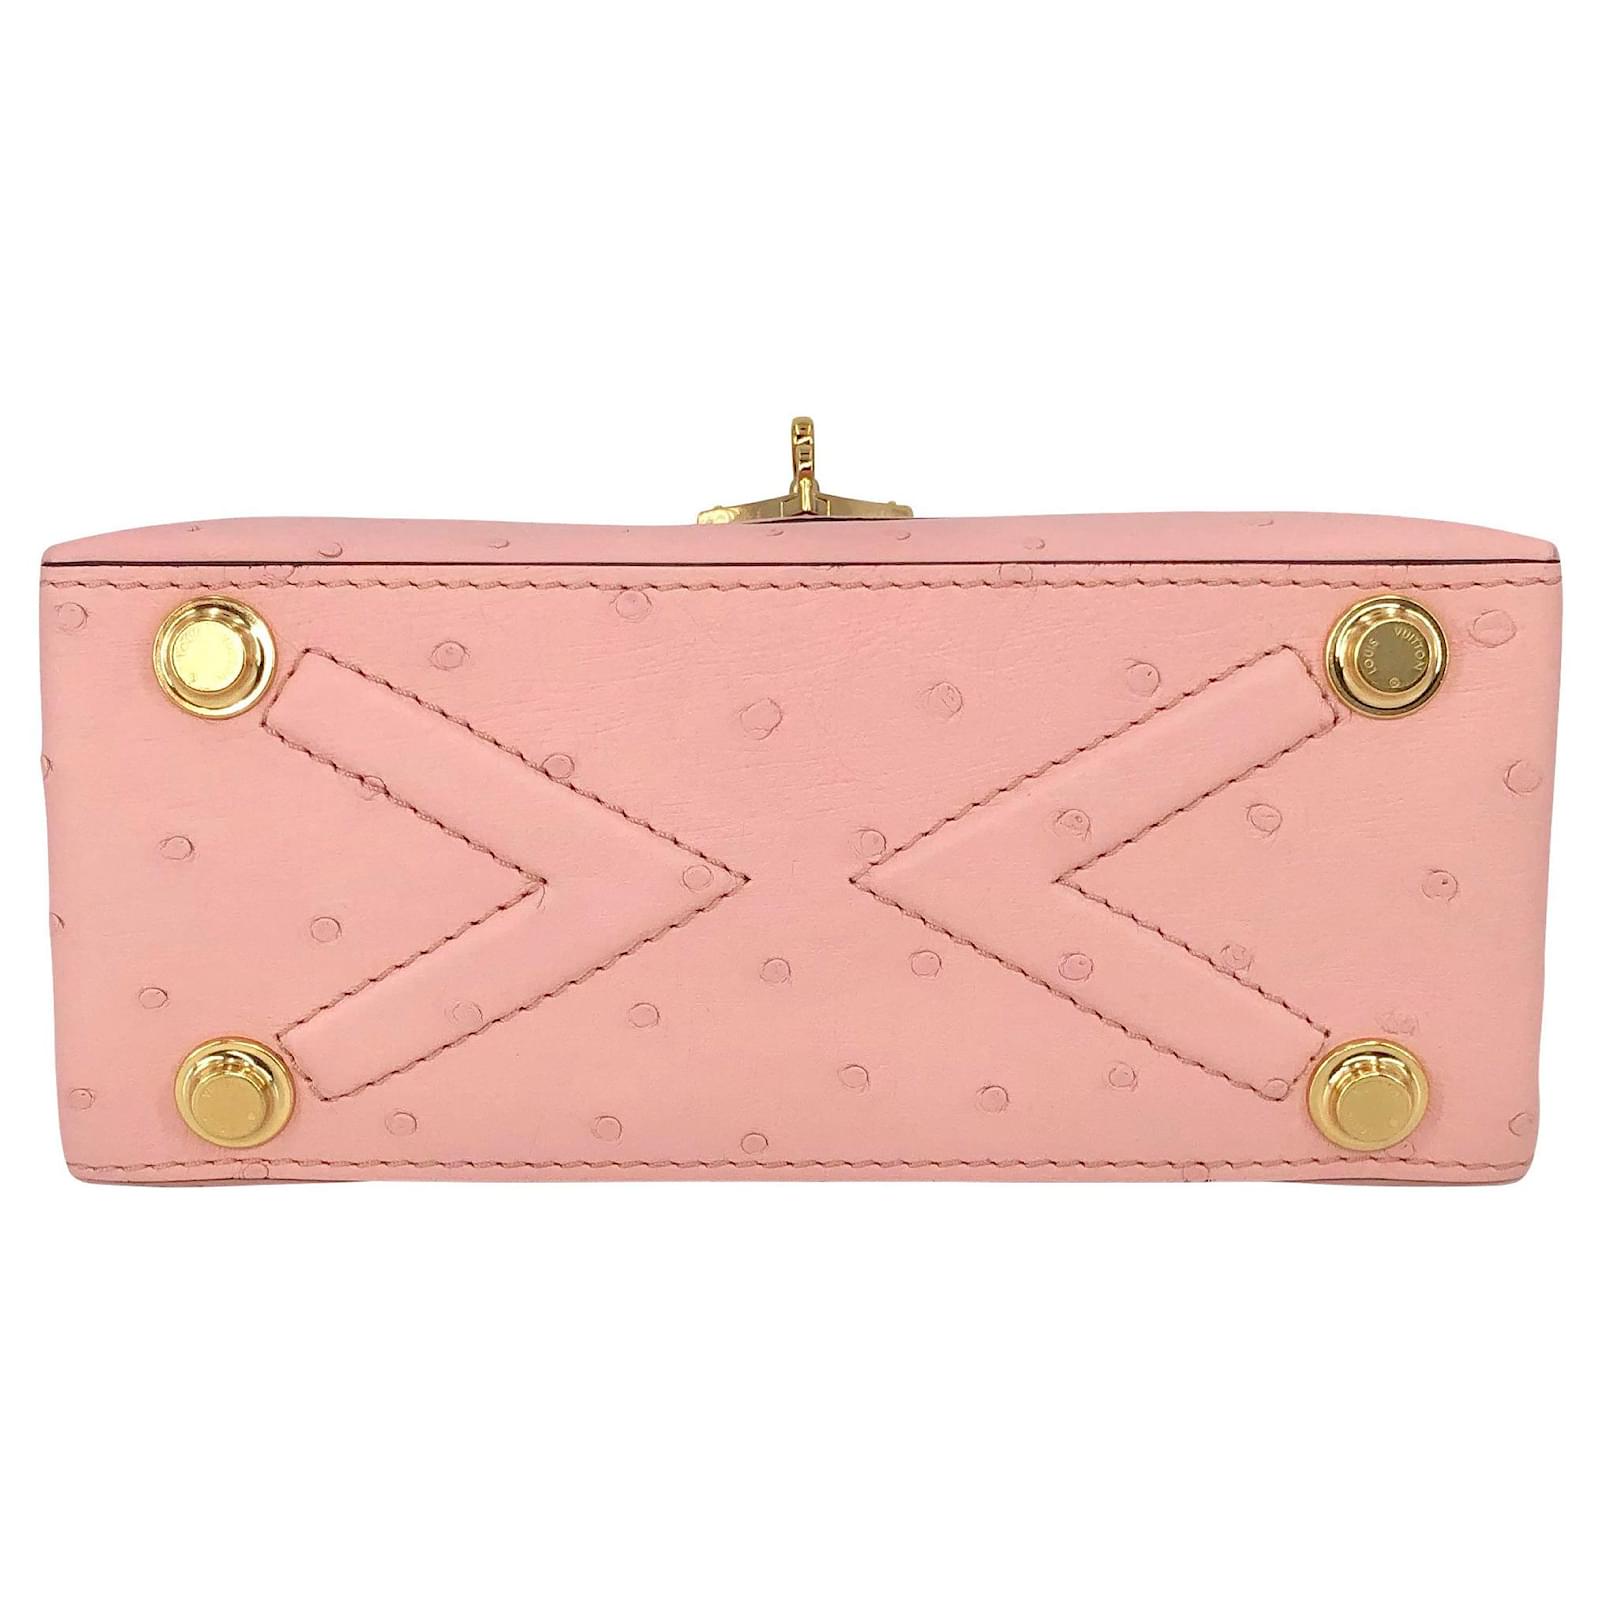 Louis Vuitton 2021 Ostrich Rose Des Vents Mini - Pink Handle Bags, Handbags  - LOU545232